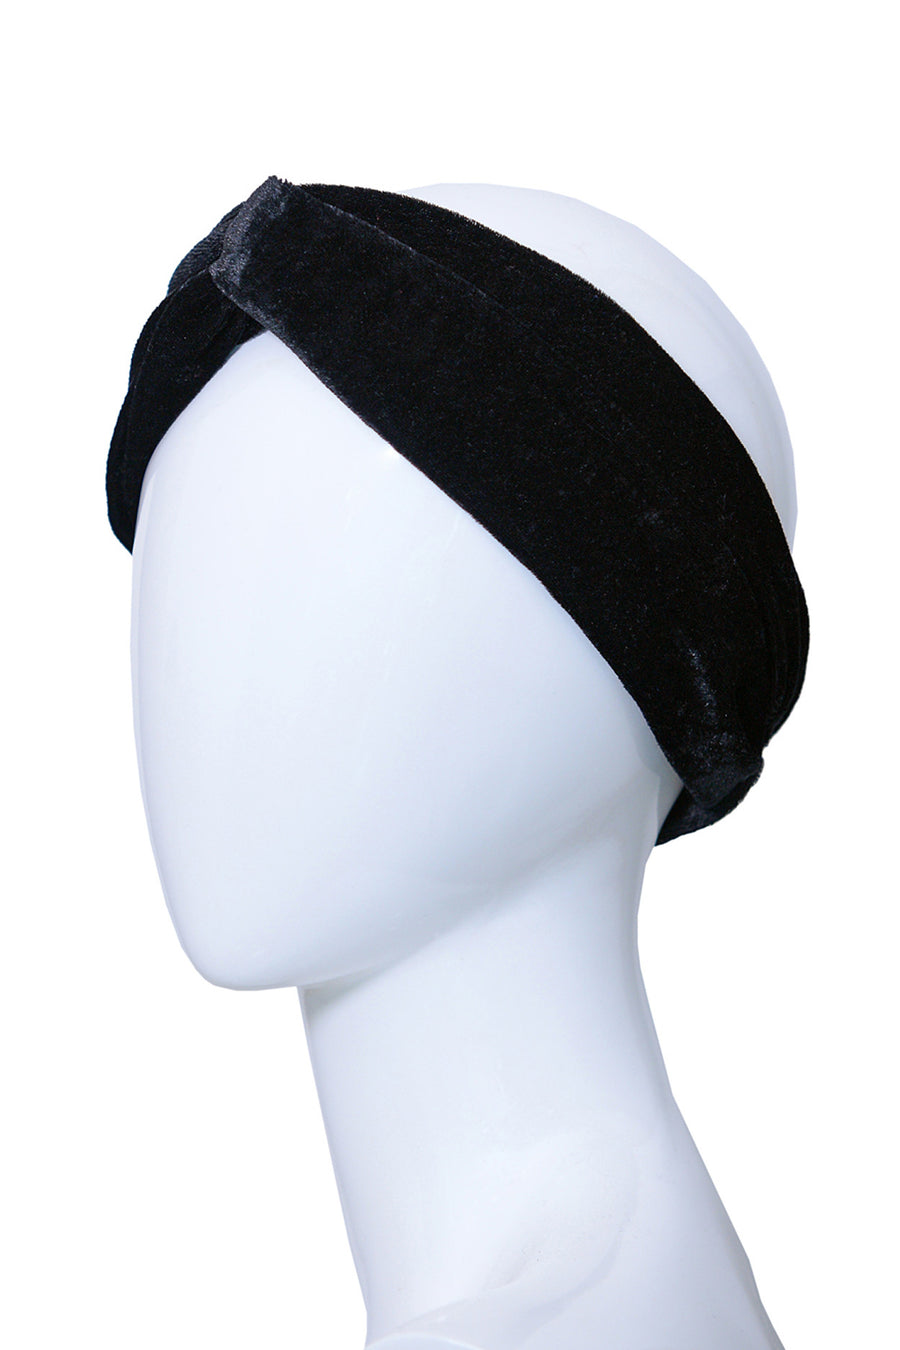 APOLINE Black Crossed Handmade Headband in Velvet